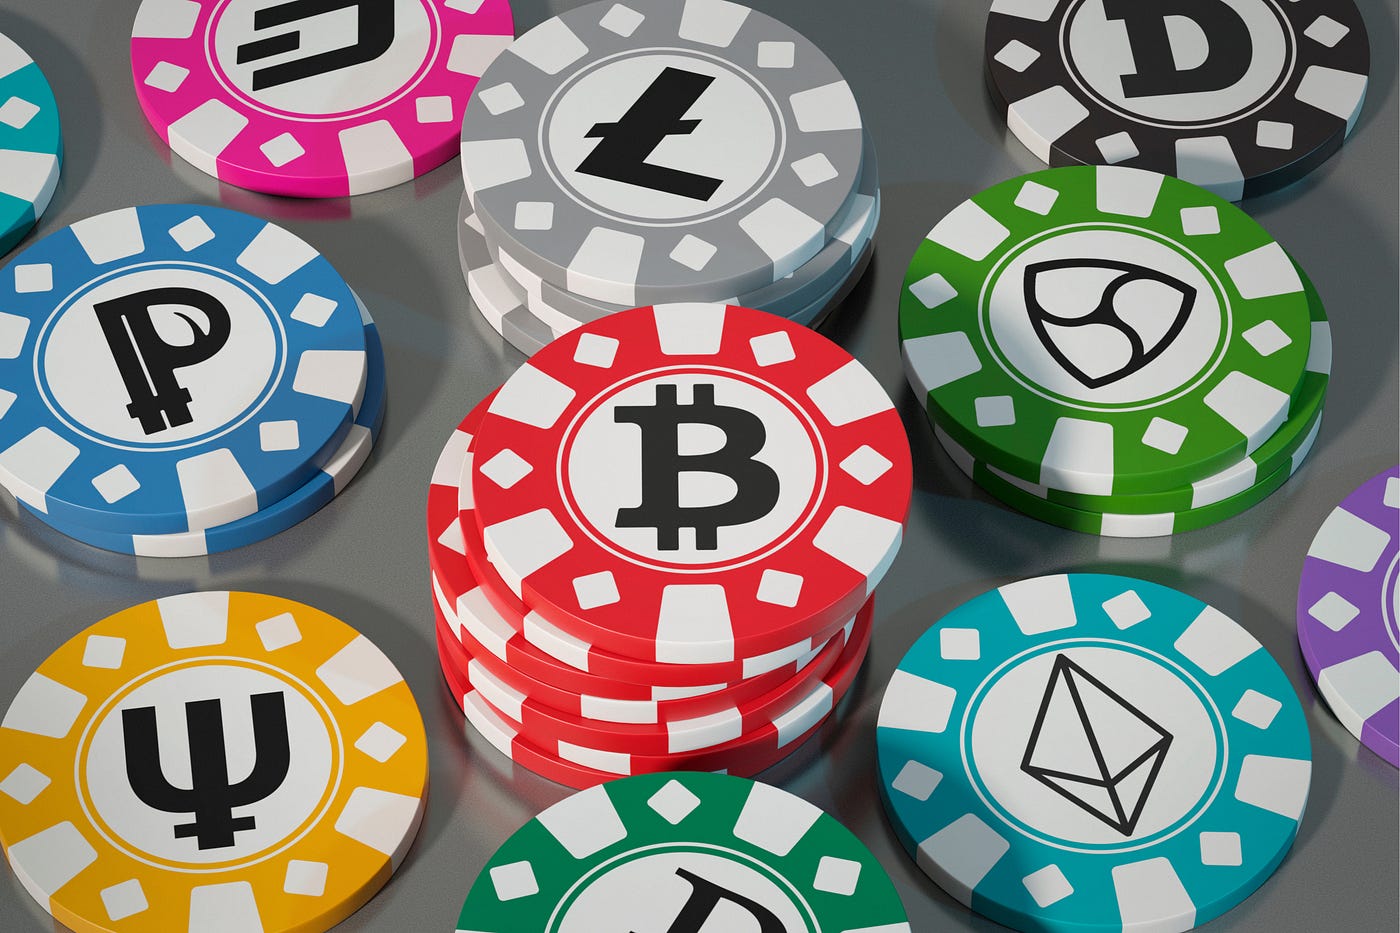 play bitcoin casino games hilft Ihnen, Ihre Träume zu verwirklichen